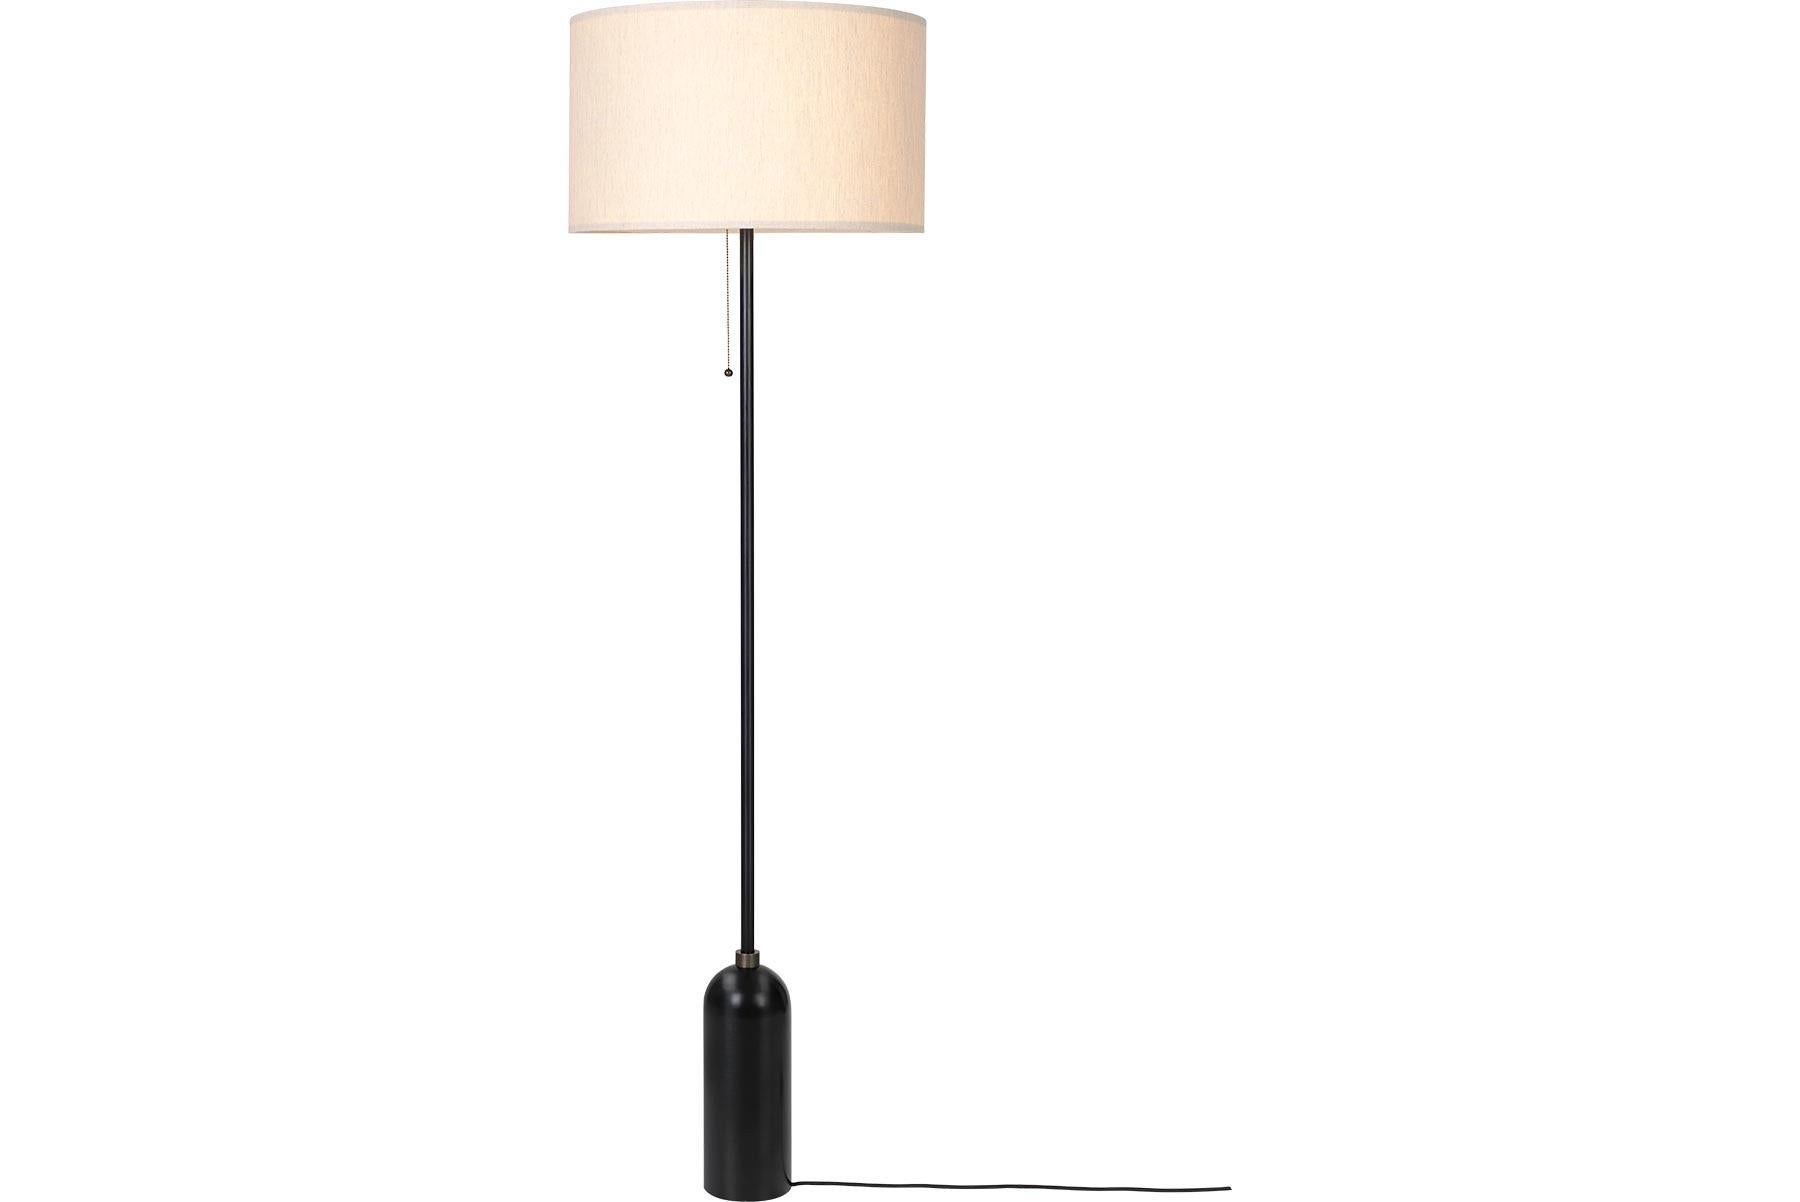 La nouvelle collection Gravity conçue par Space Copenhagen, composée d'une lampe de table et d'un lampadaire, oppose esthétiquement force et fragilité. Son nom vient de l'équilibre particulier de la lampe entre l'ancrage de la base lourde et